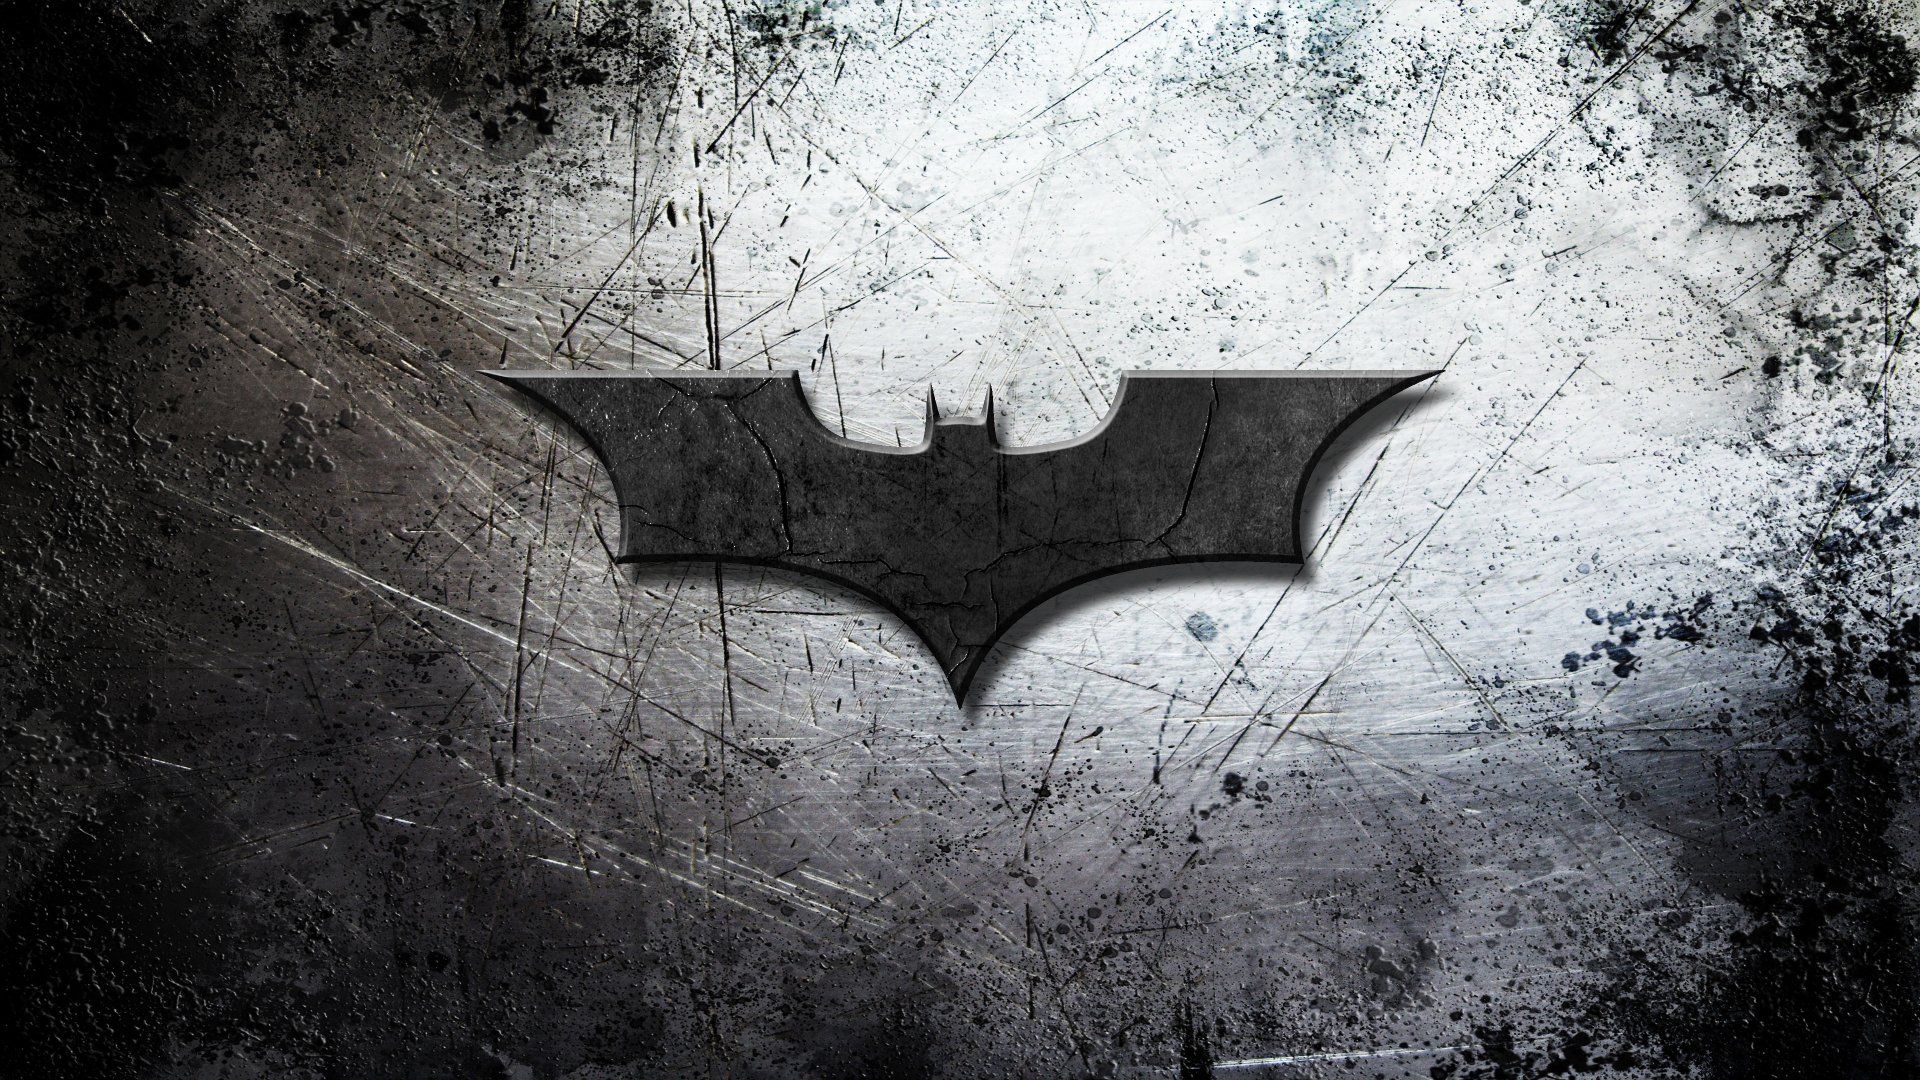 200+New Batman Wallpaper & 4k HD images